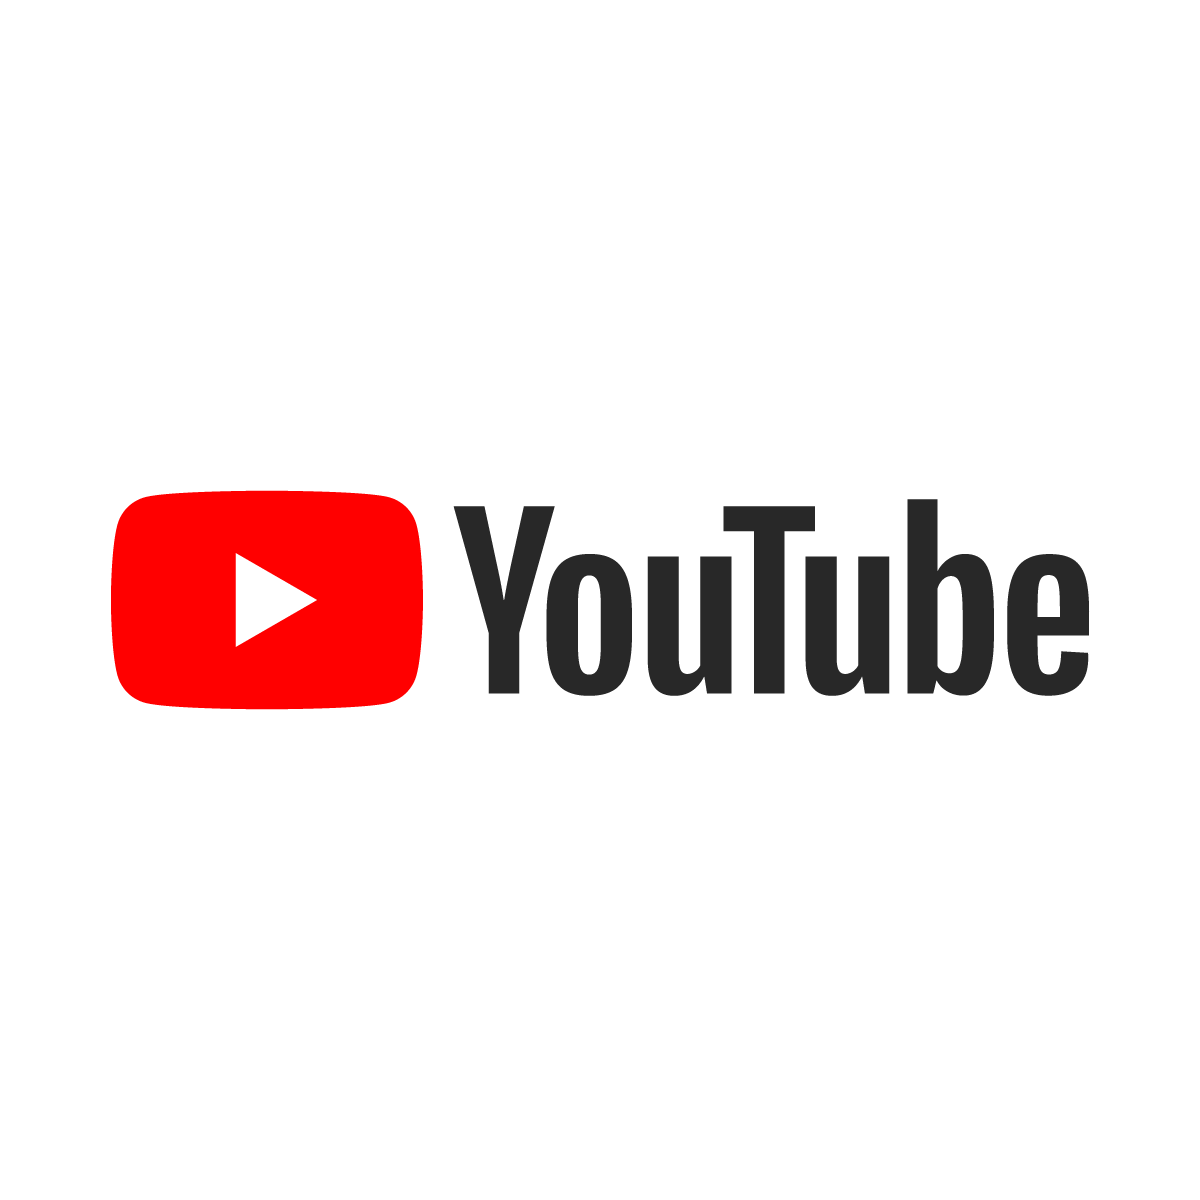 Ganhe dinheiro com seu canal no YouTube! - 2